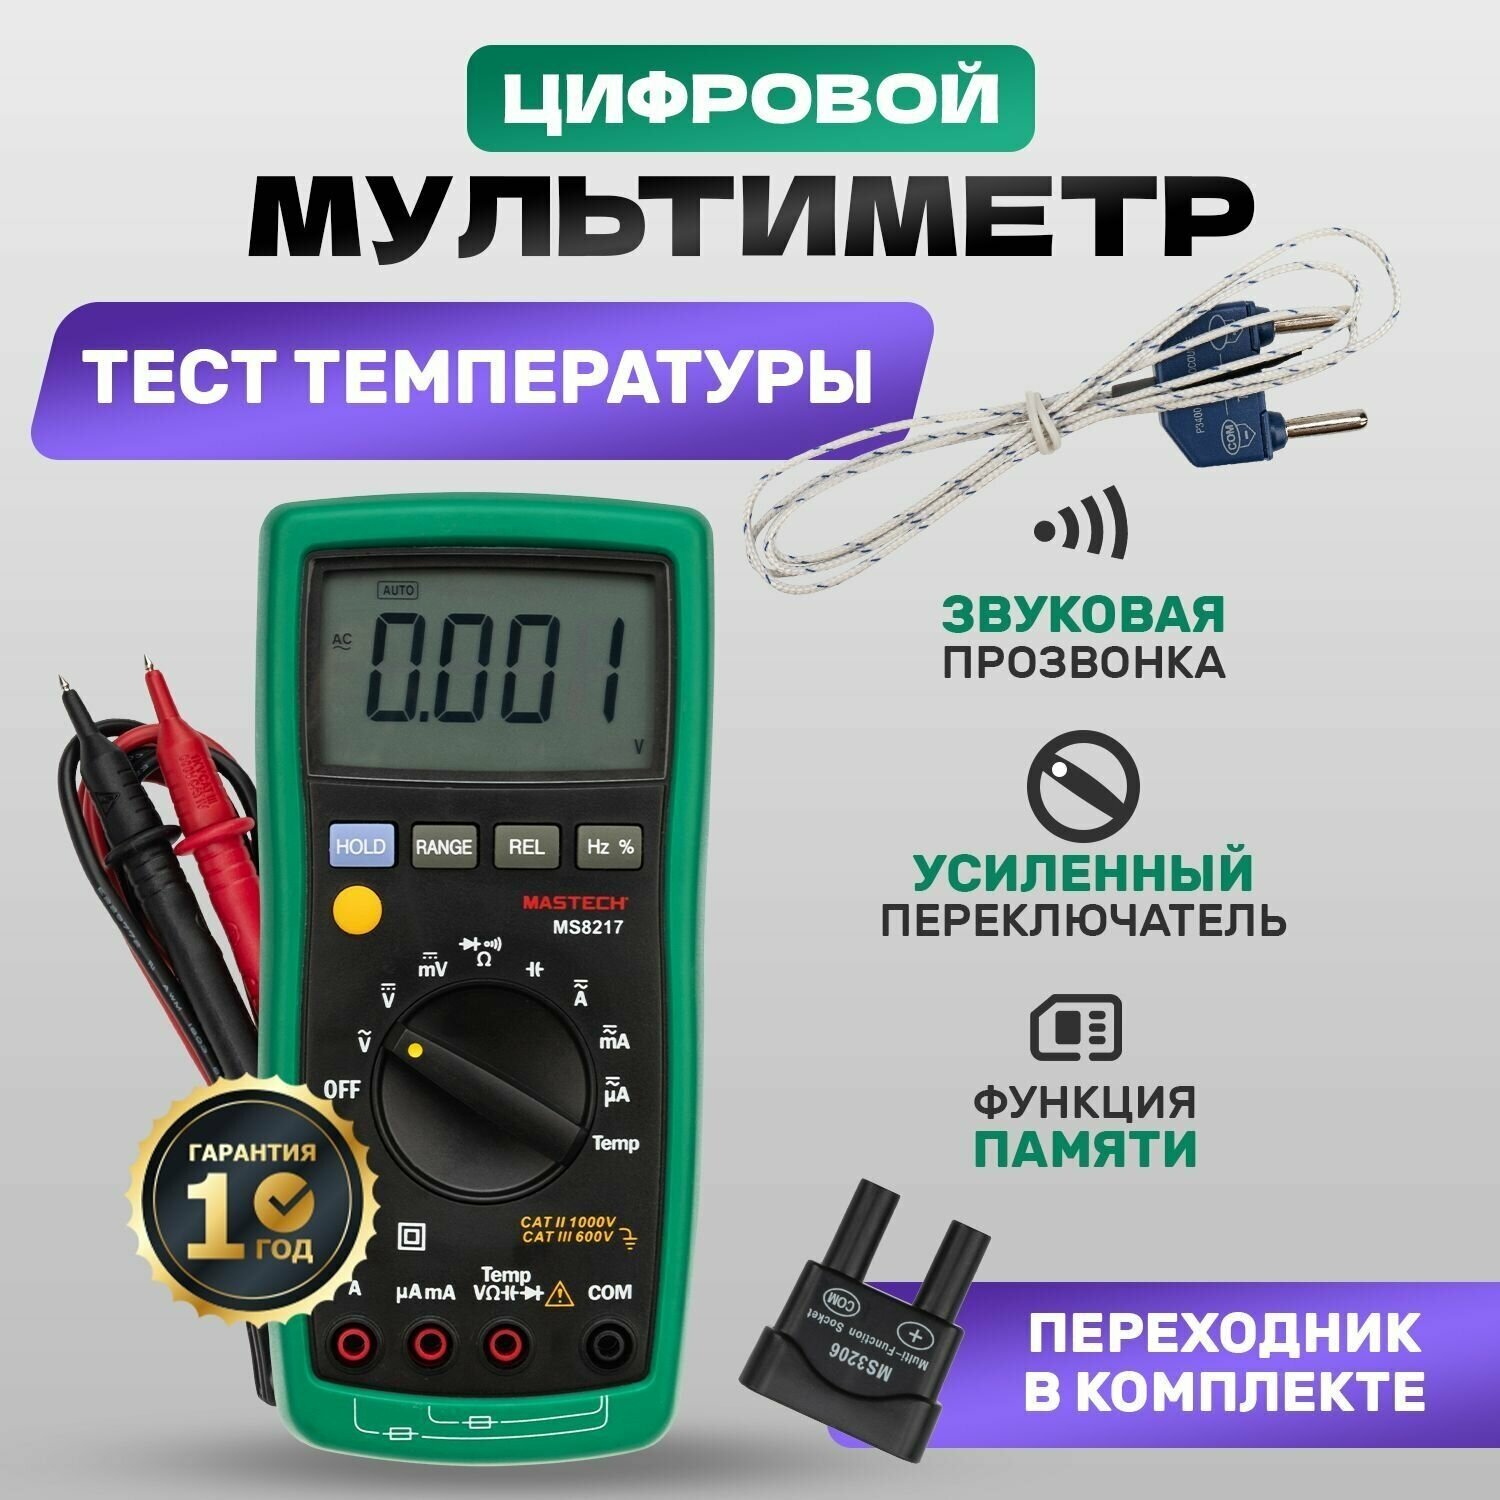 Мультиметр токоизмерительный MS8217 Mastech / тестер электрический / вольтметр